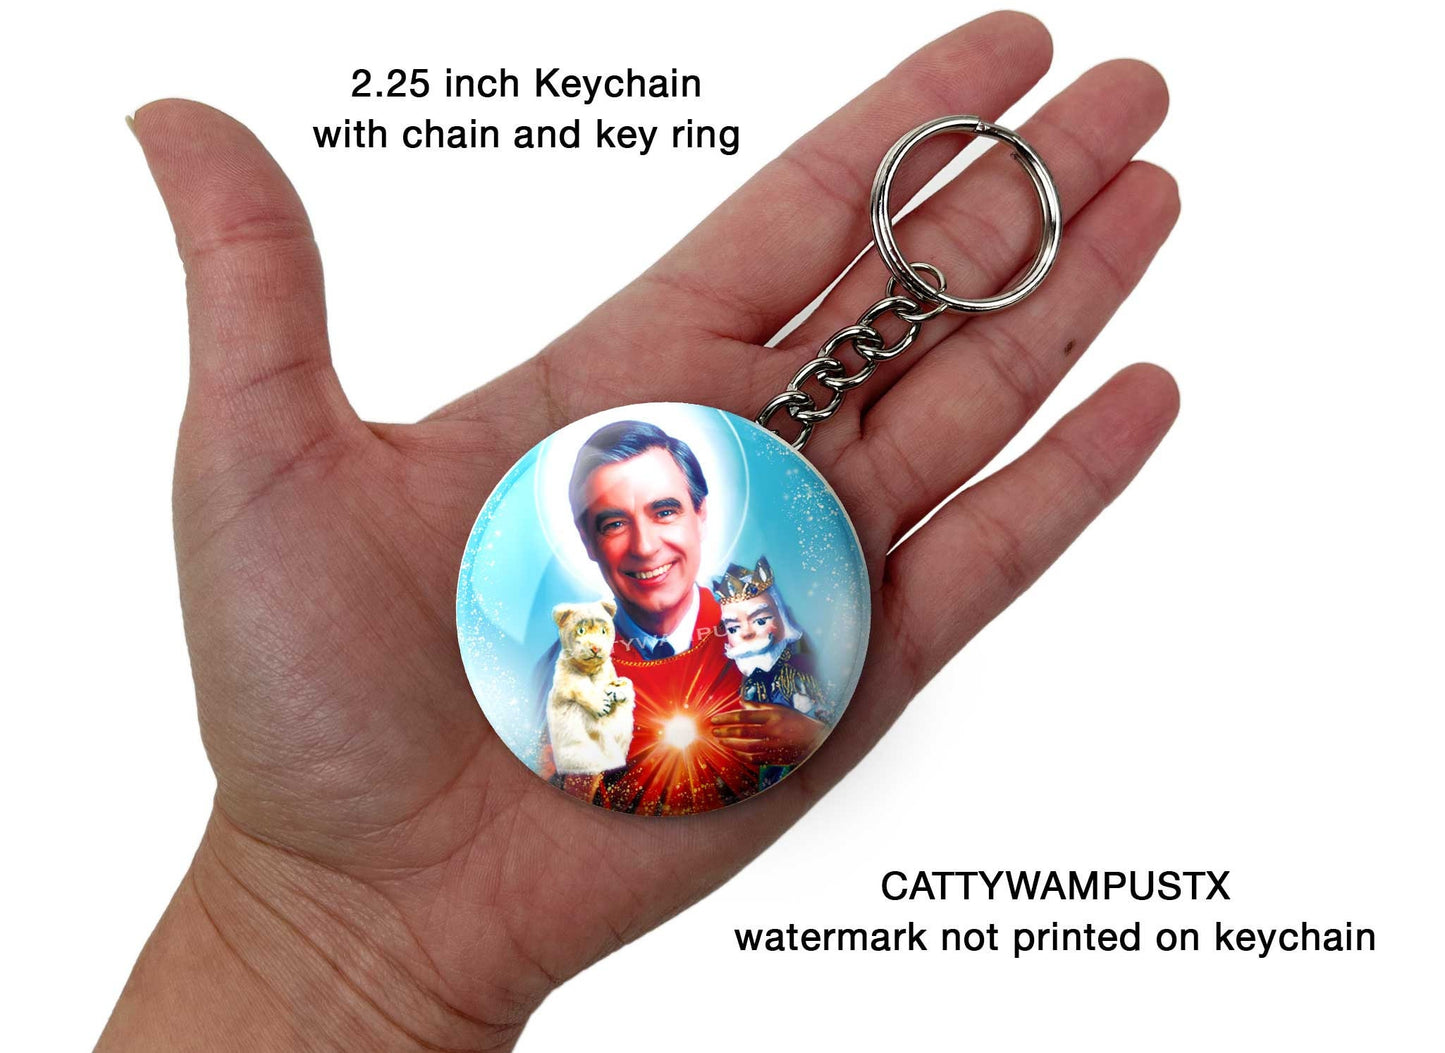 Saint Mr. Rogers Keychain